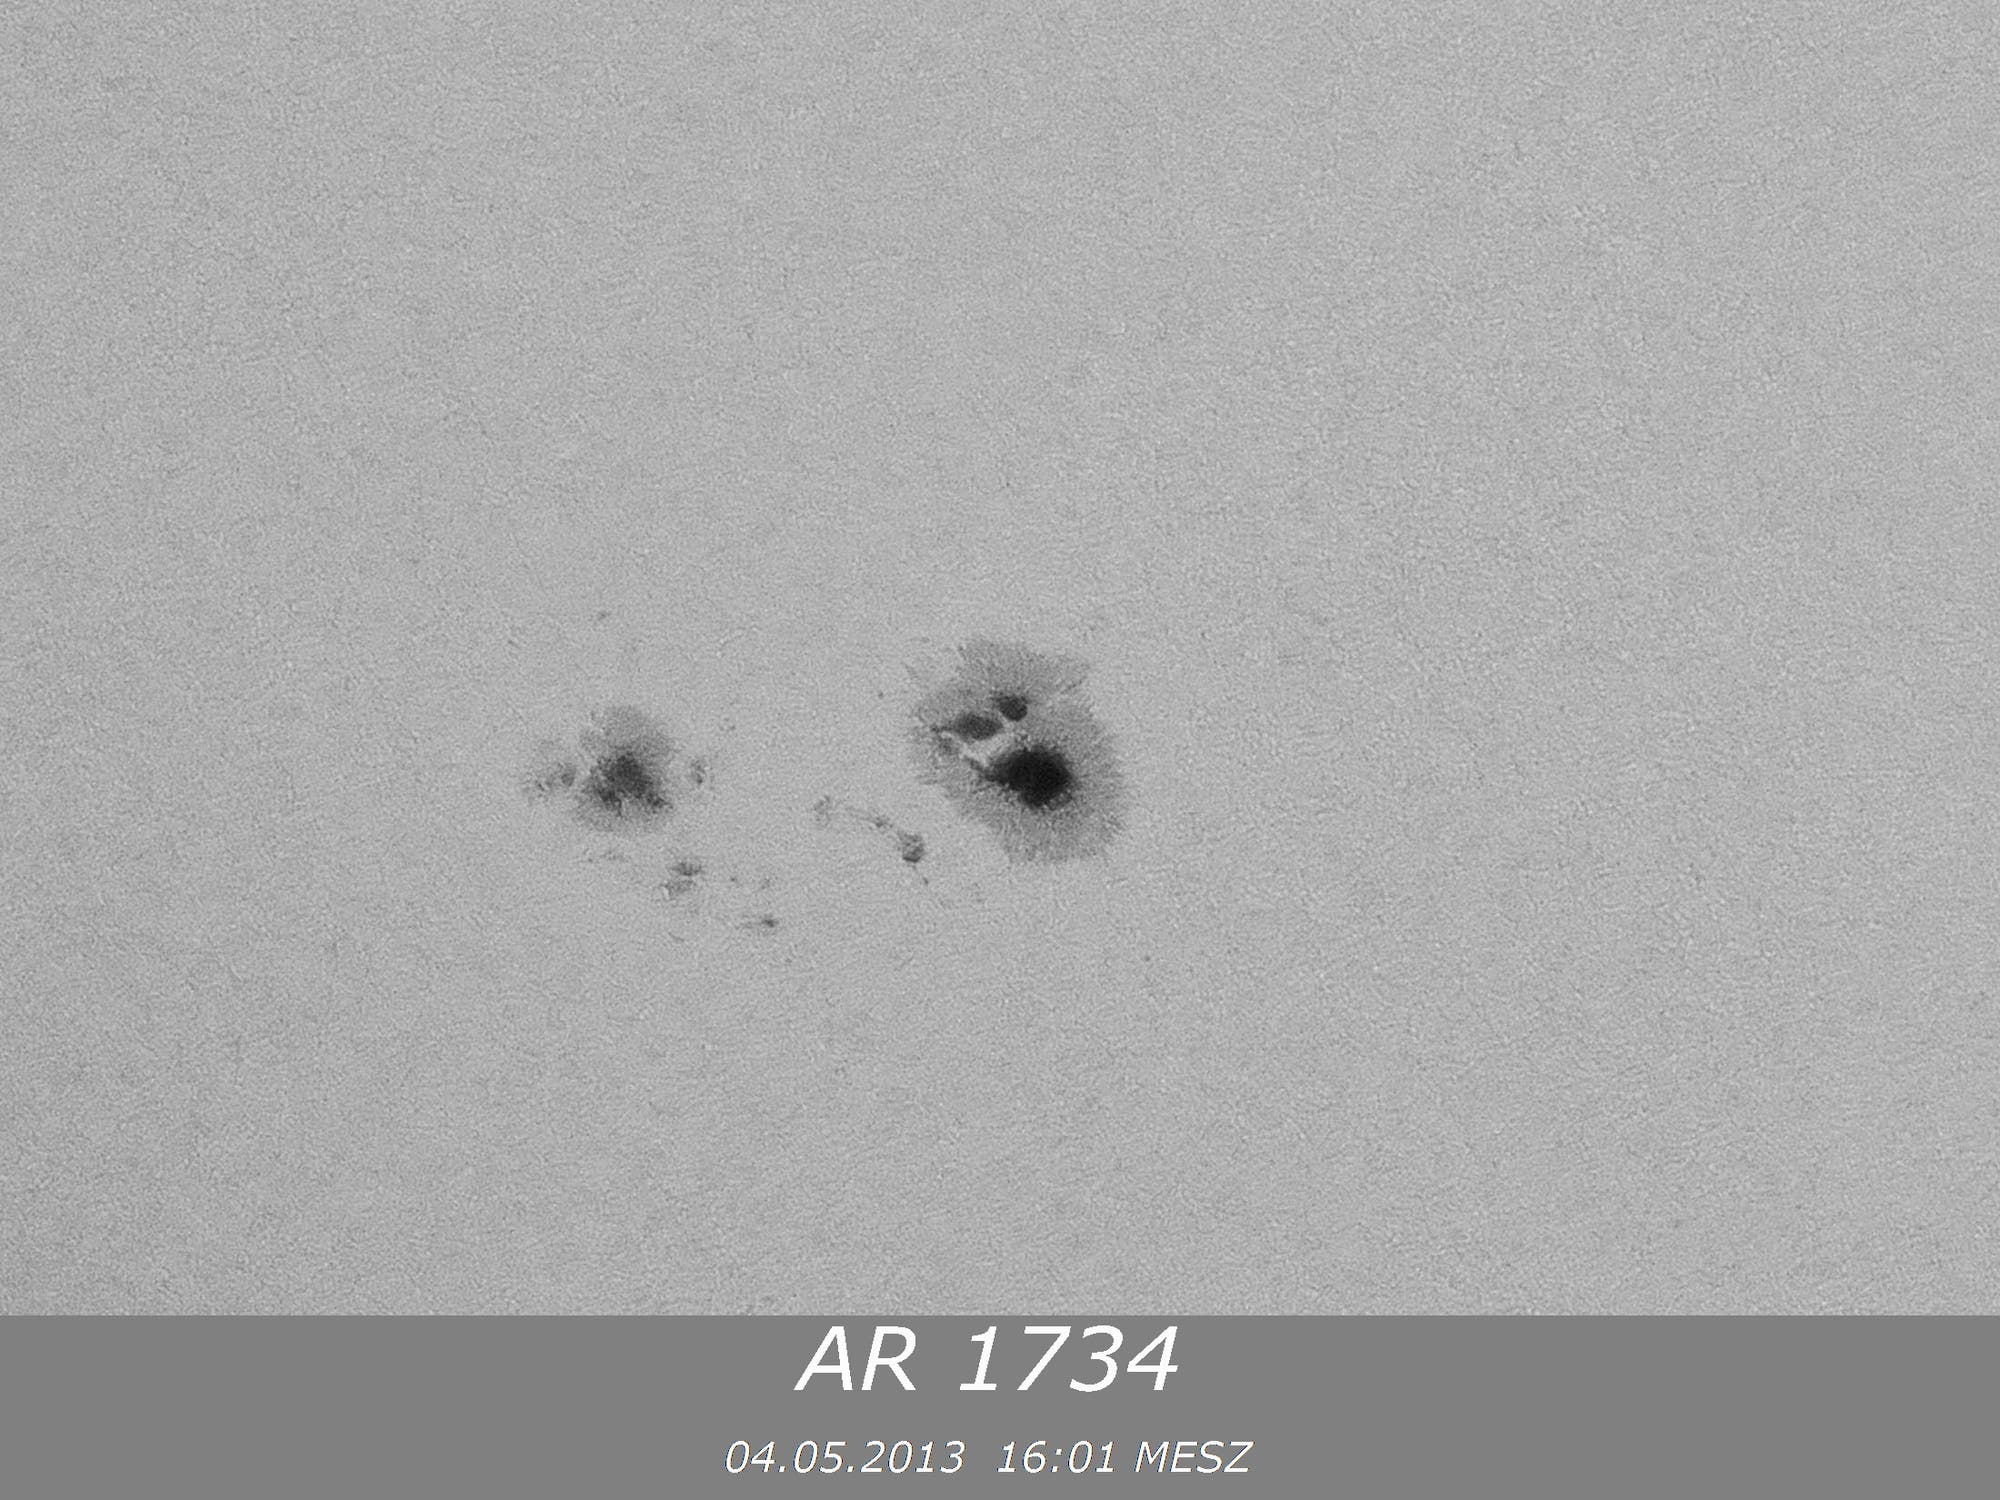 Sonnenfleck AR 1734 des aktuellen 24. Zyklus